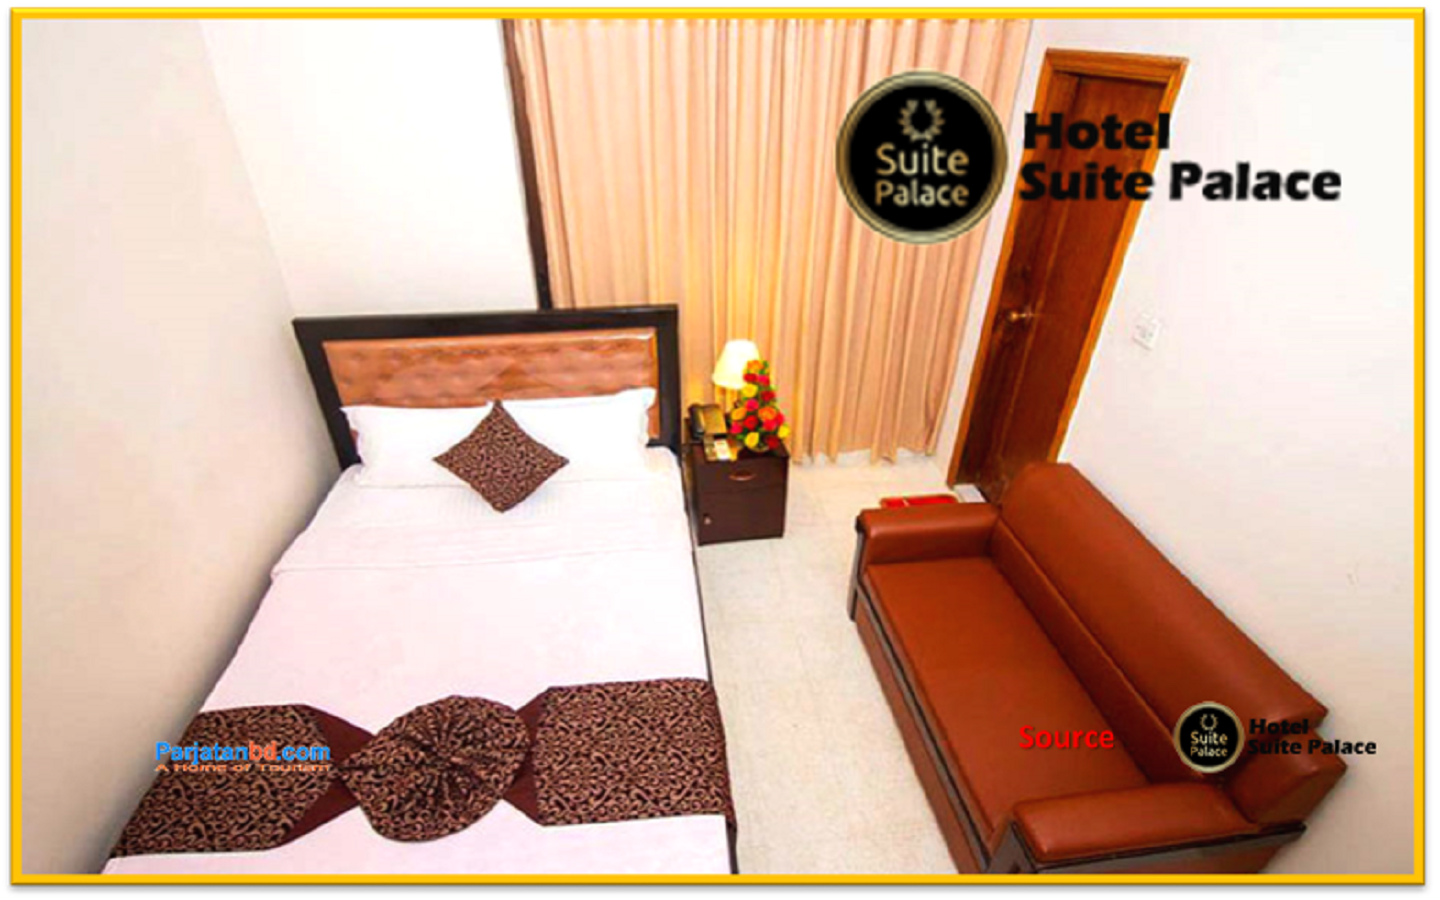 Room Junior Suite -1, Hotel Suite Palace, Baridhara